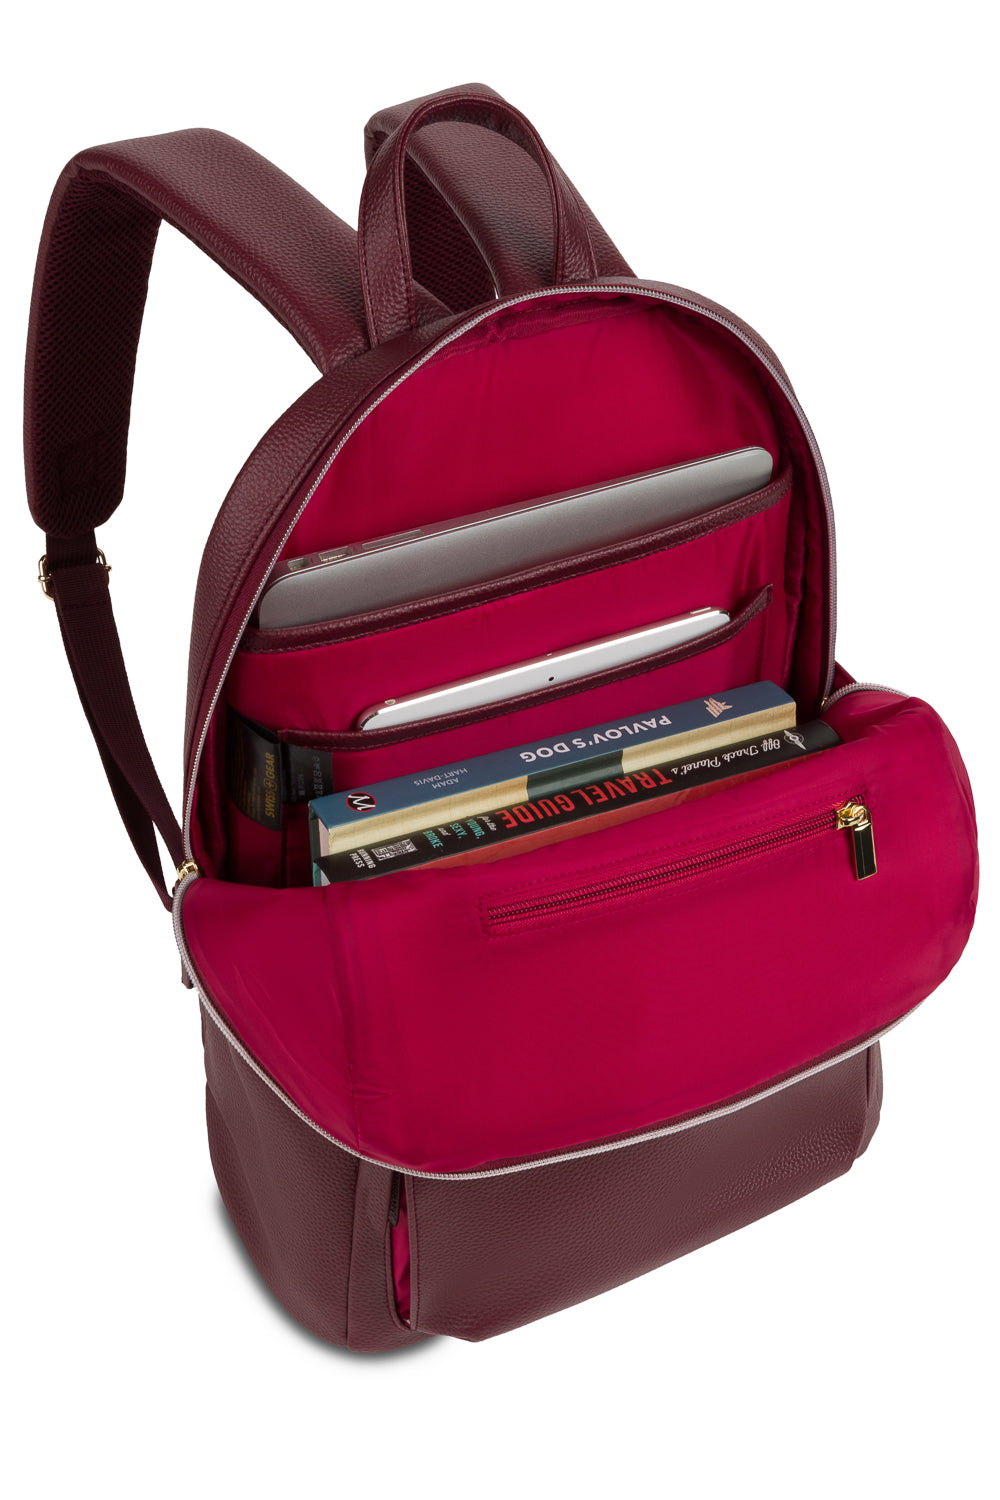 SwissGear 9901 Laptop Backpack